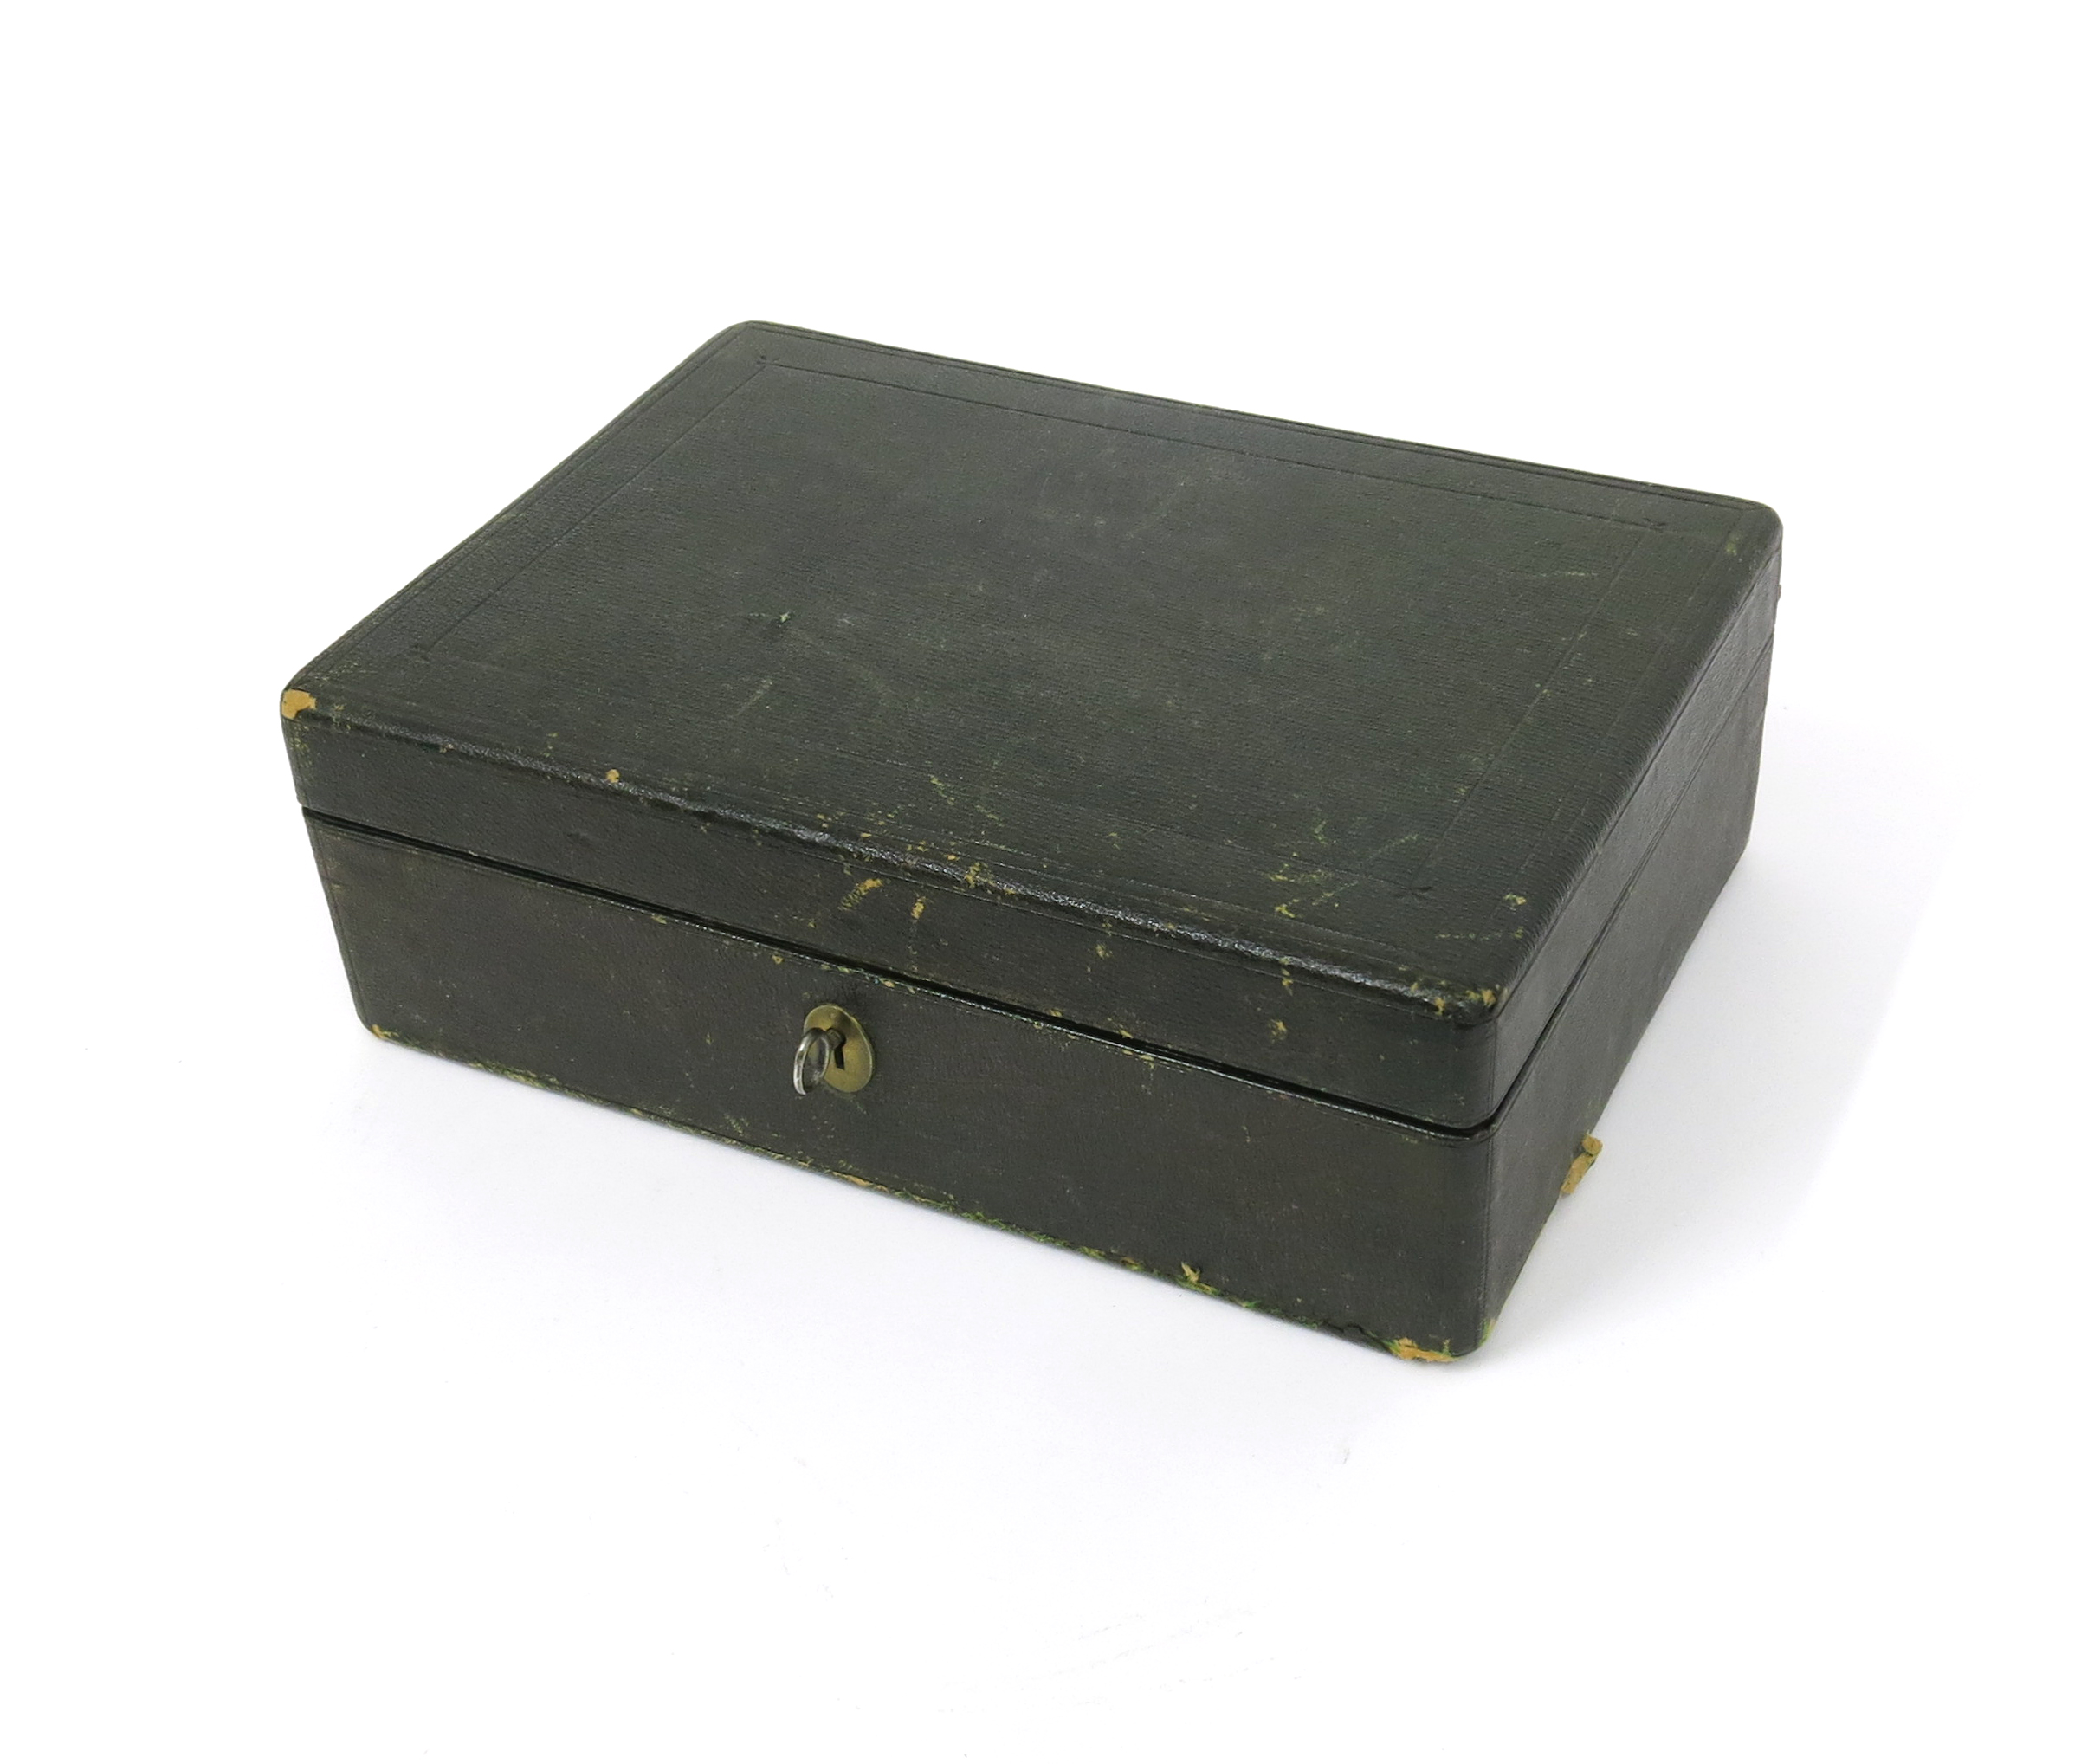 λ A jewellery box containing various items of jewellery, including an 18ct gold wedding band (1.1g), - Image 8 of 8